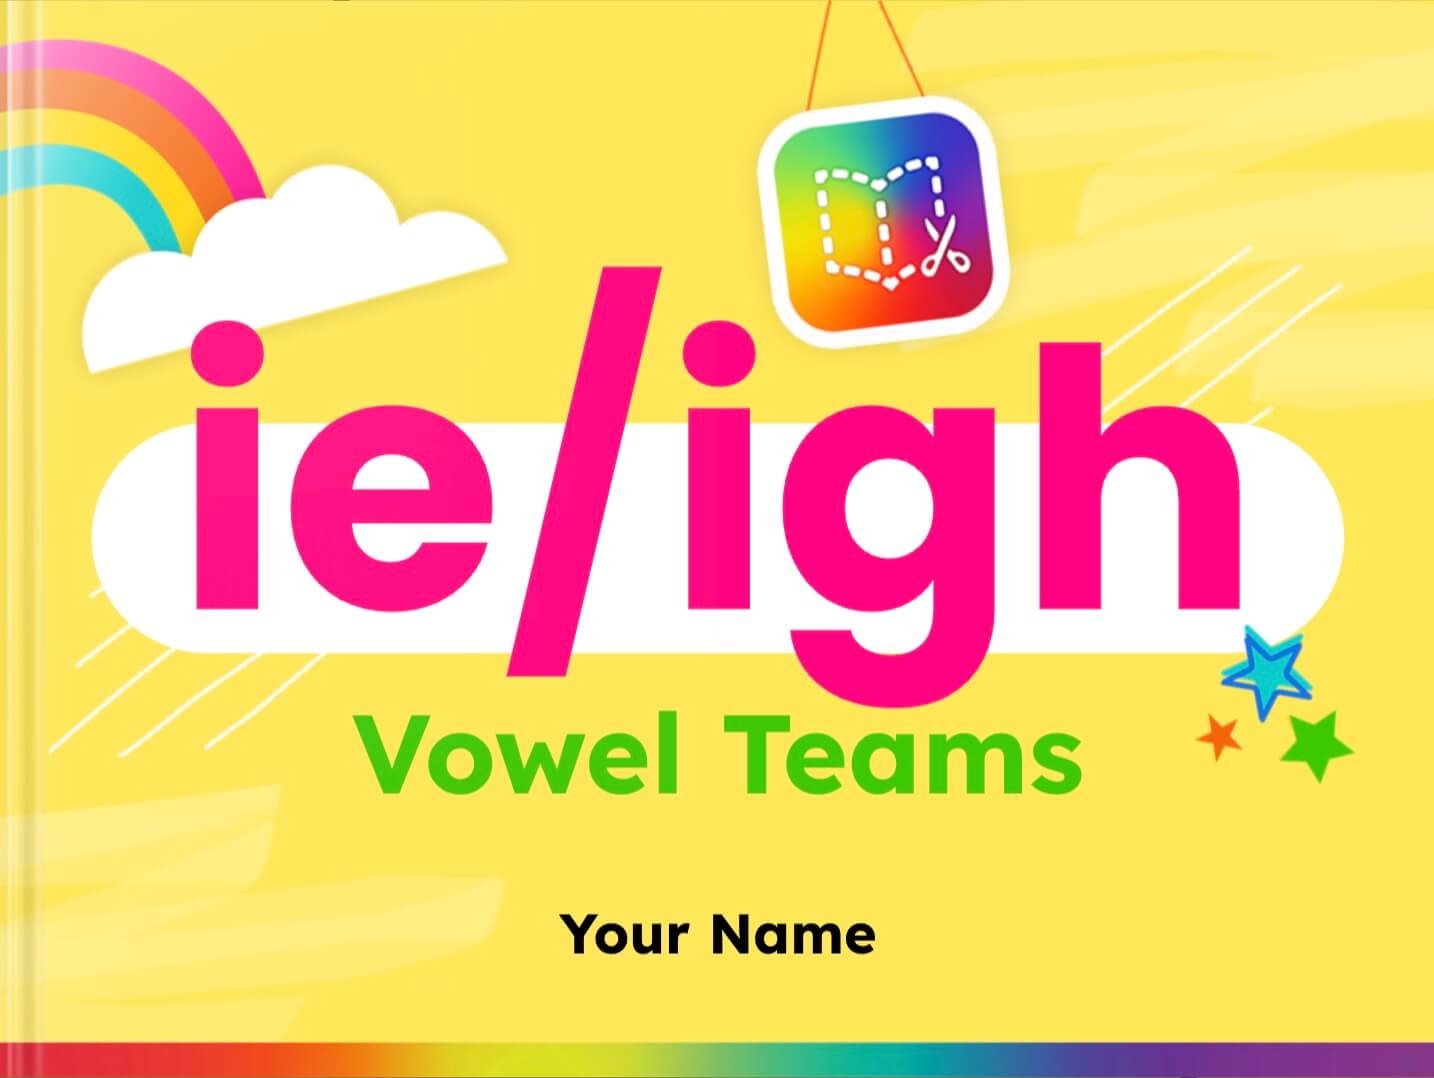 ie/igh vowel teams